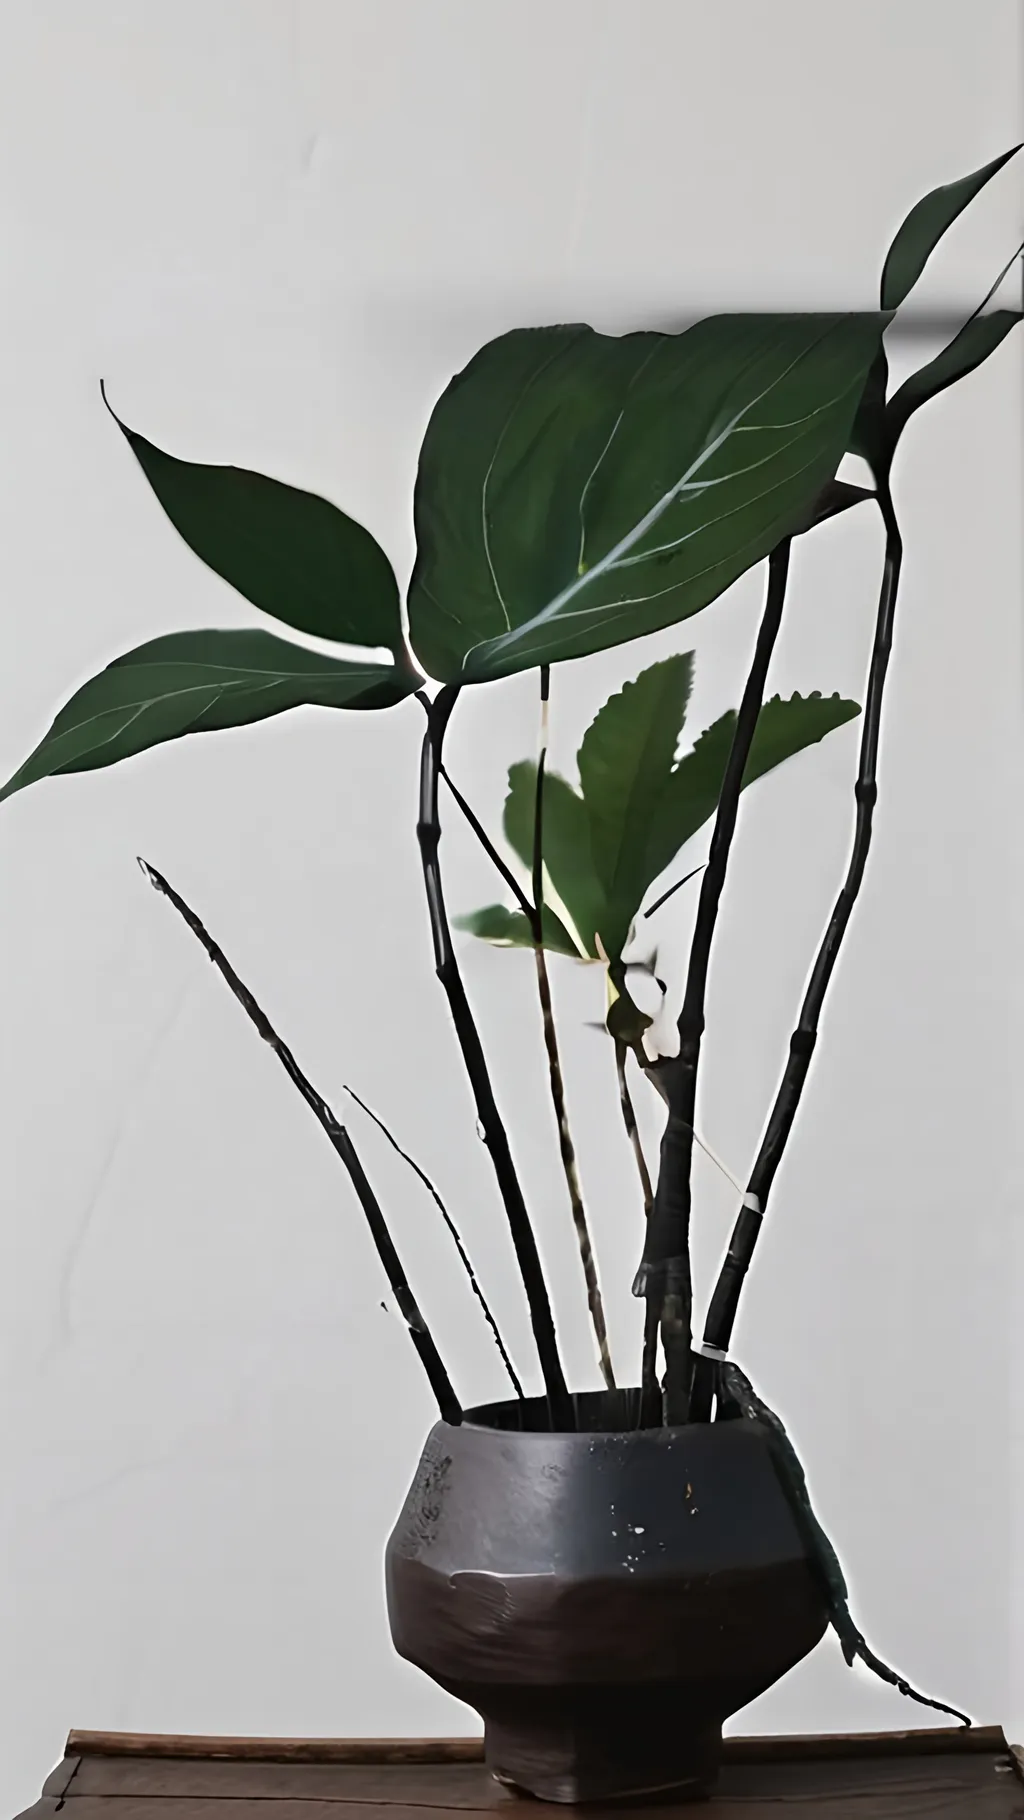 Prompt: plants wabi sabi japandi art